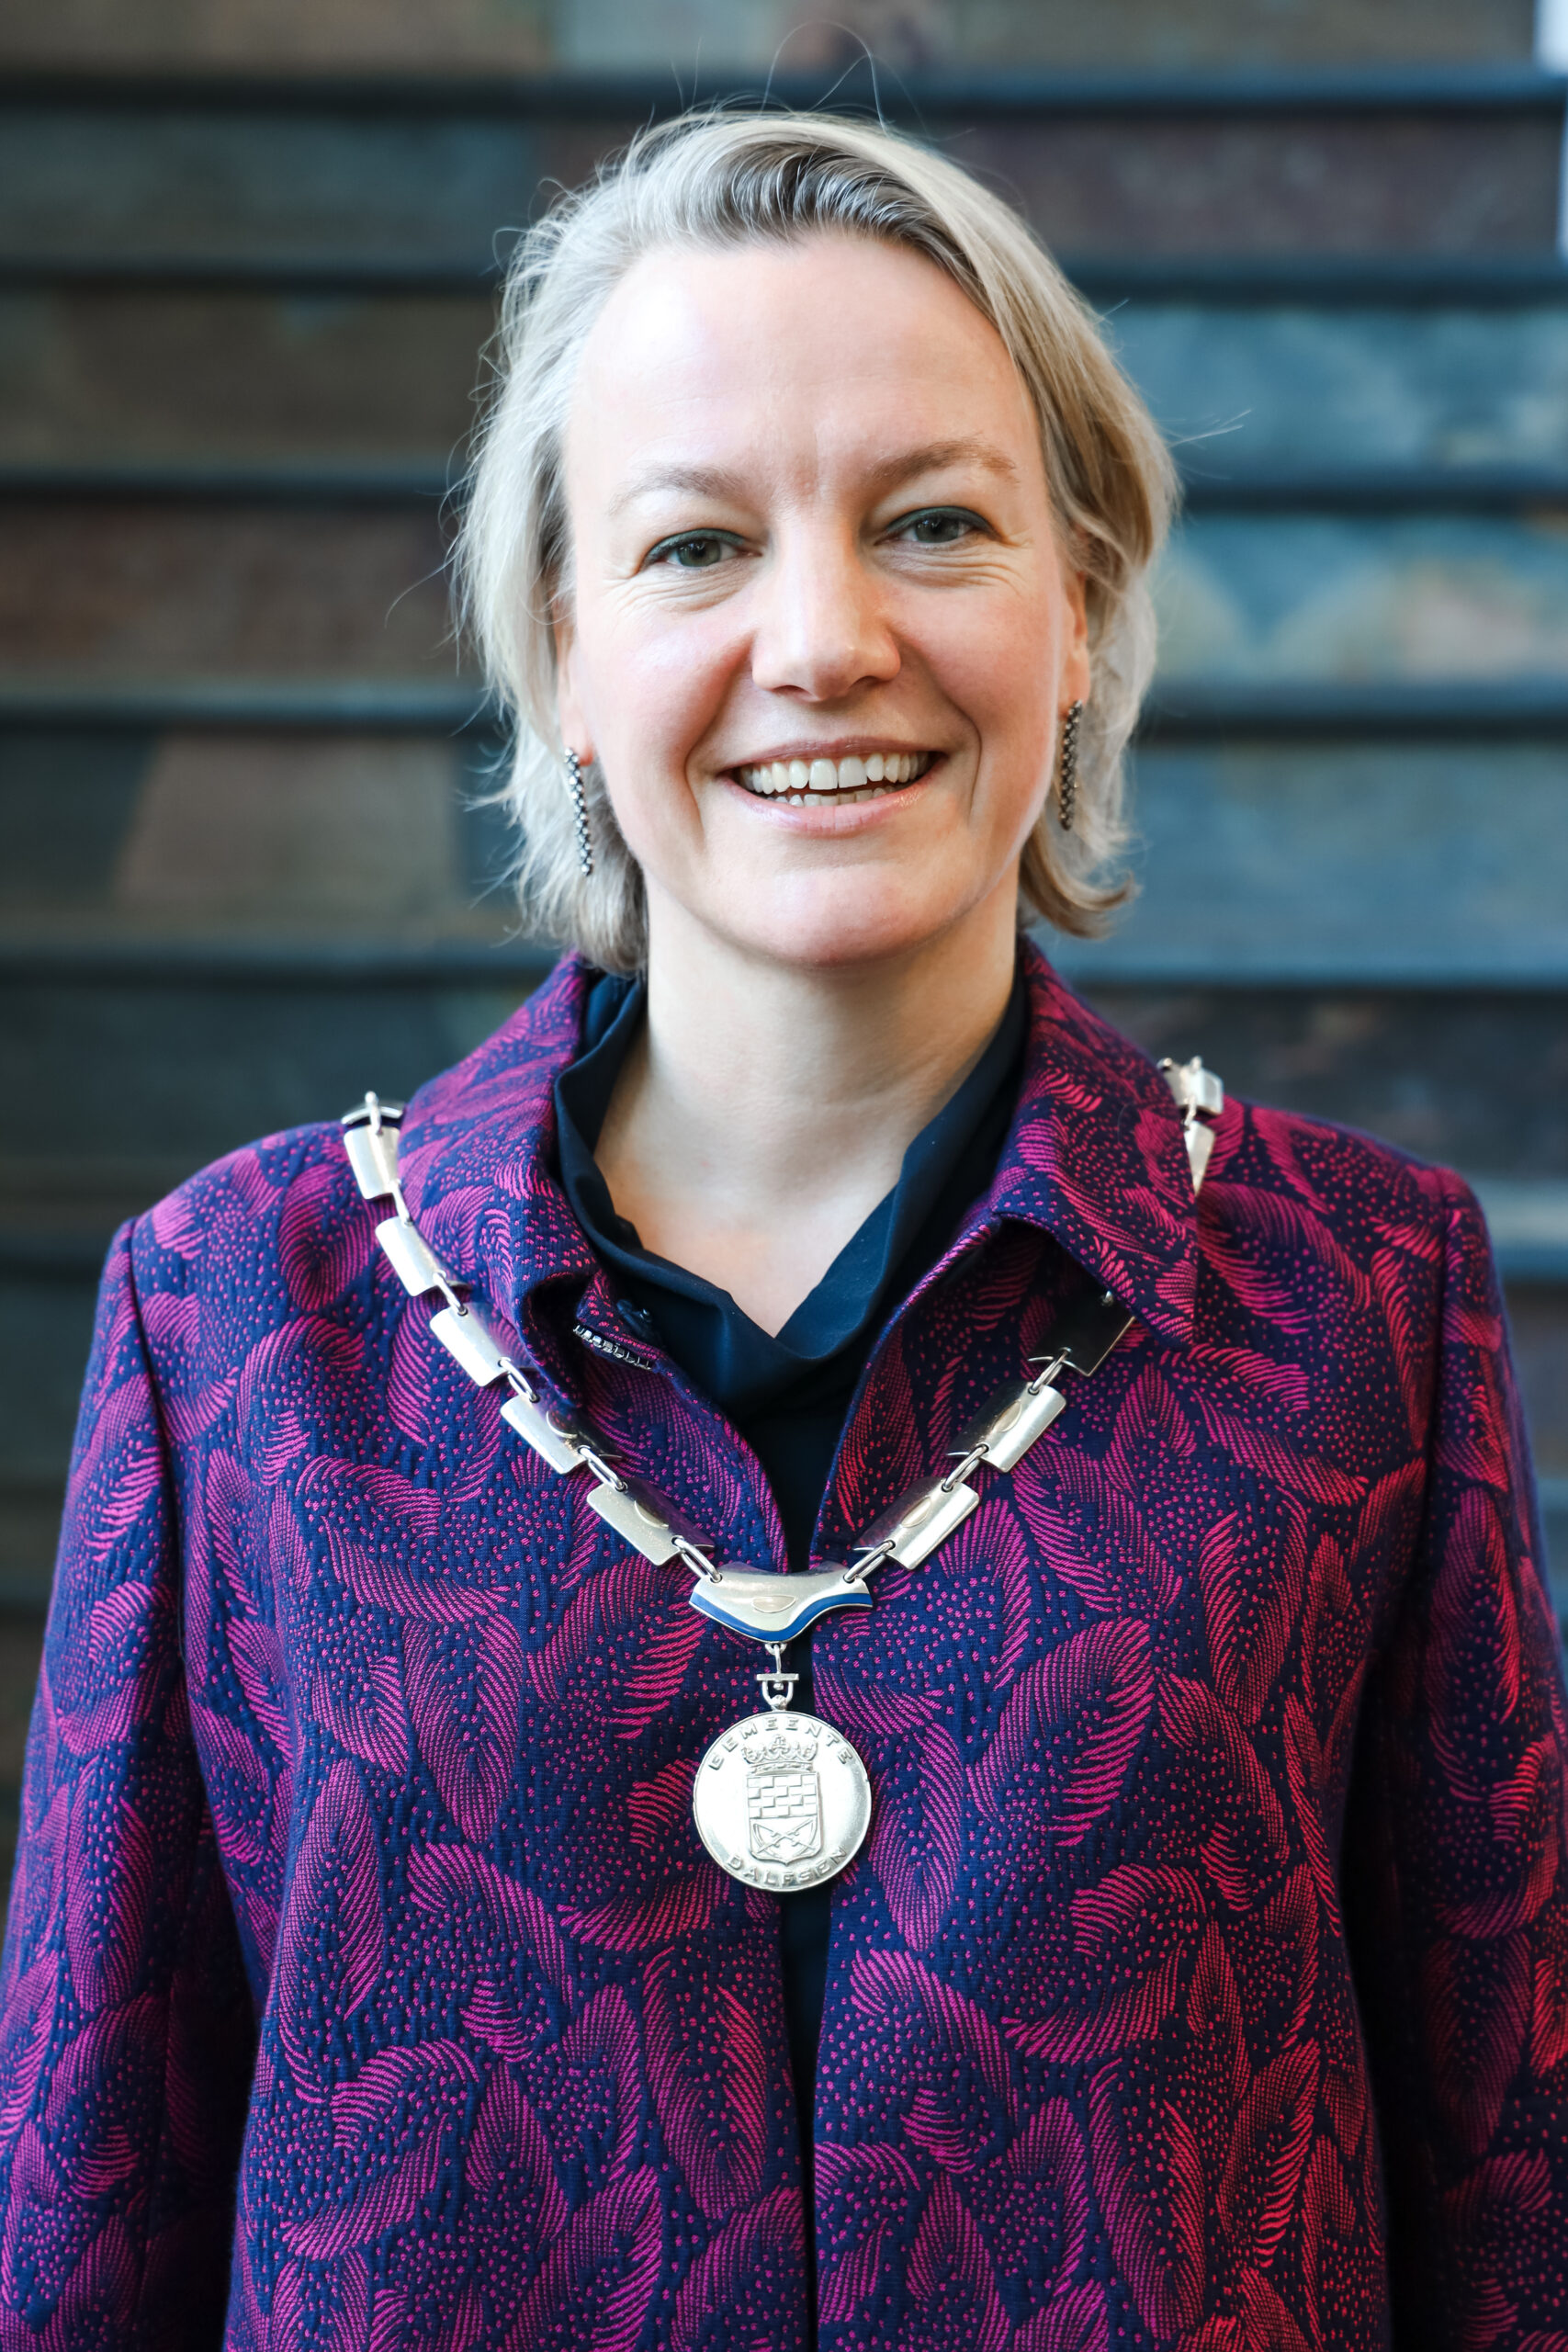 Dalfser burgemeester Erica van Lente voorgedragen als burgemeester van gemeente Midden-Groningen